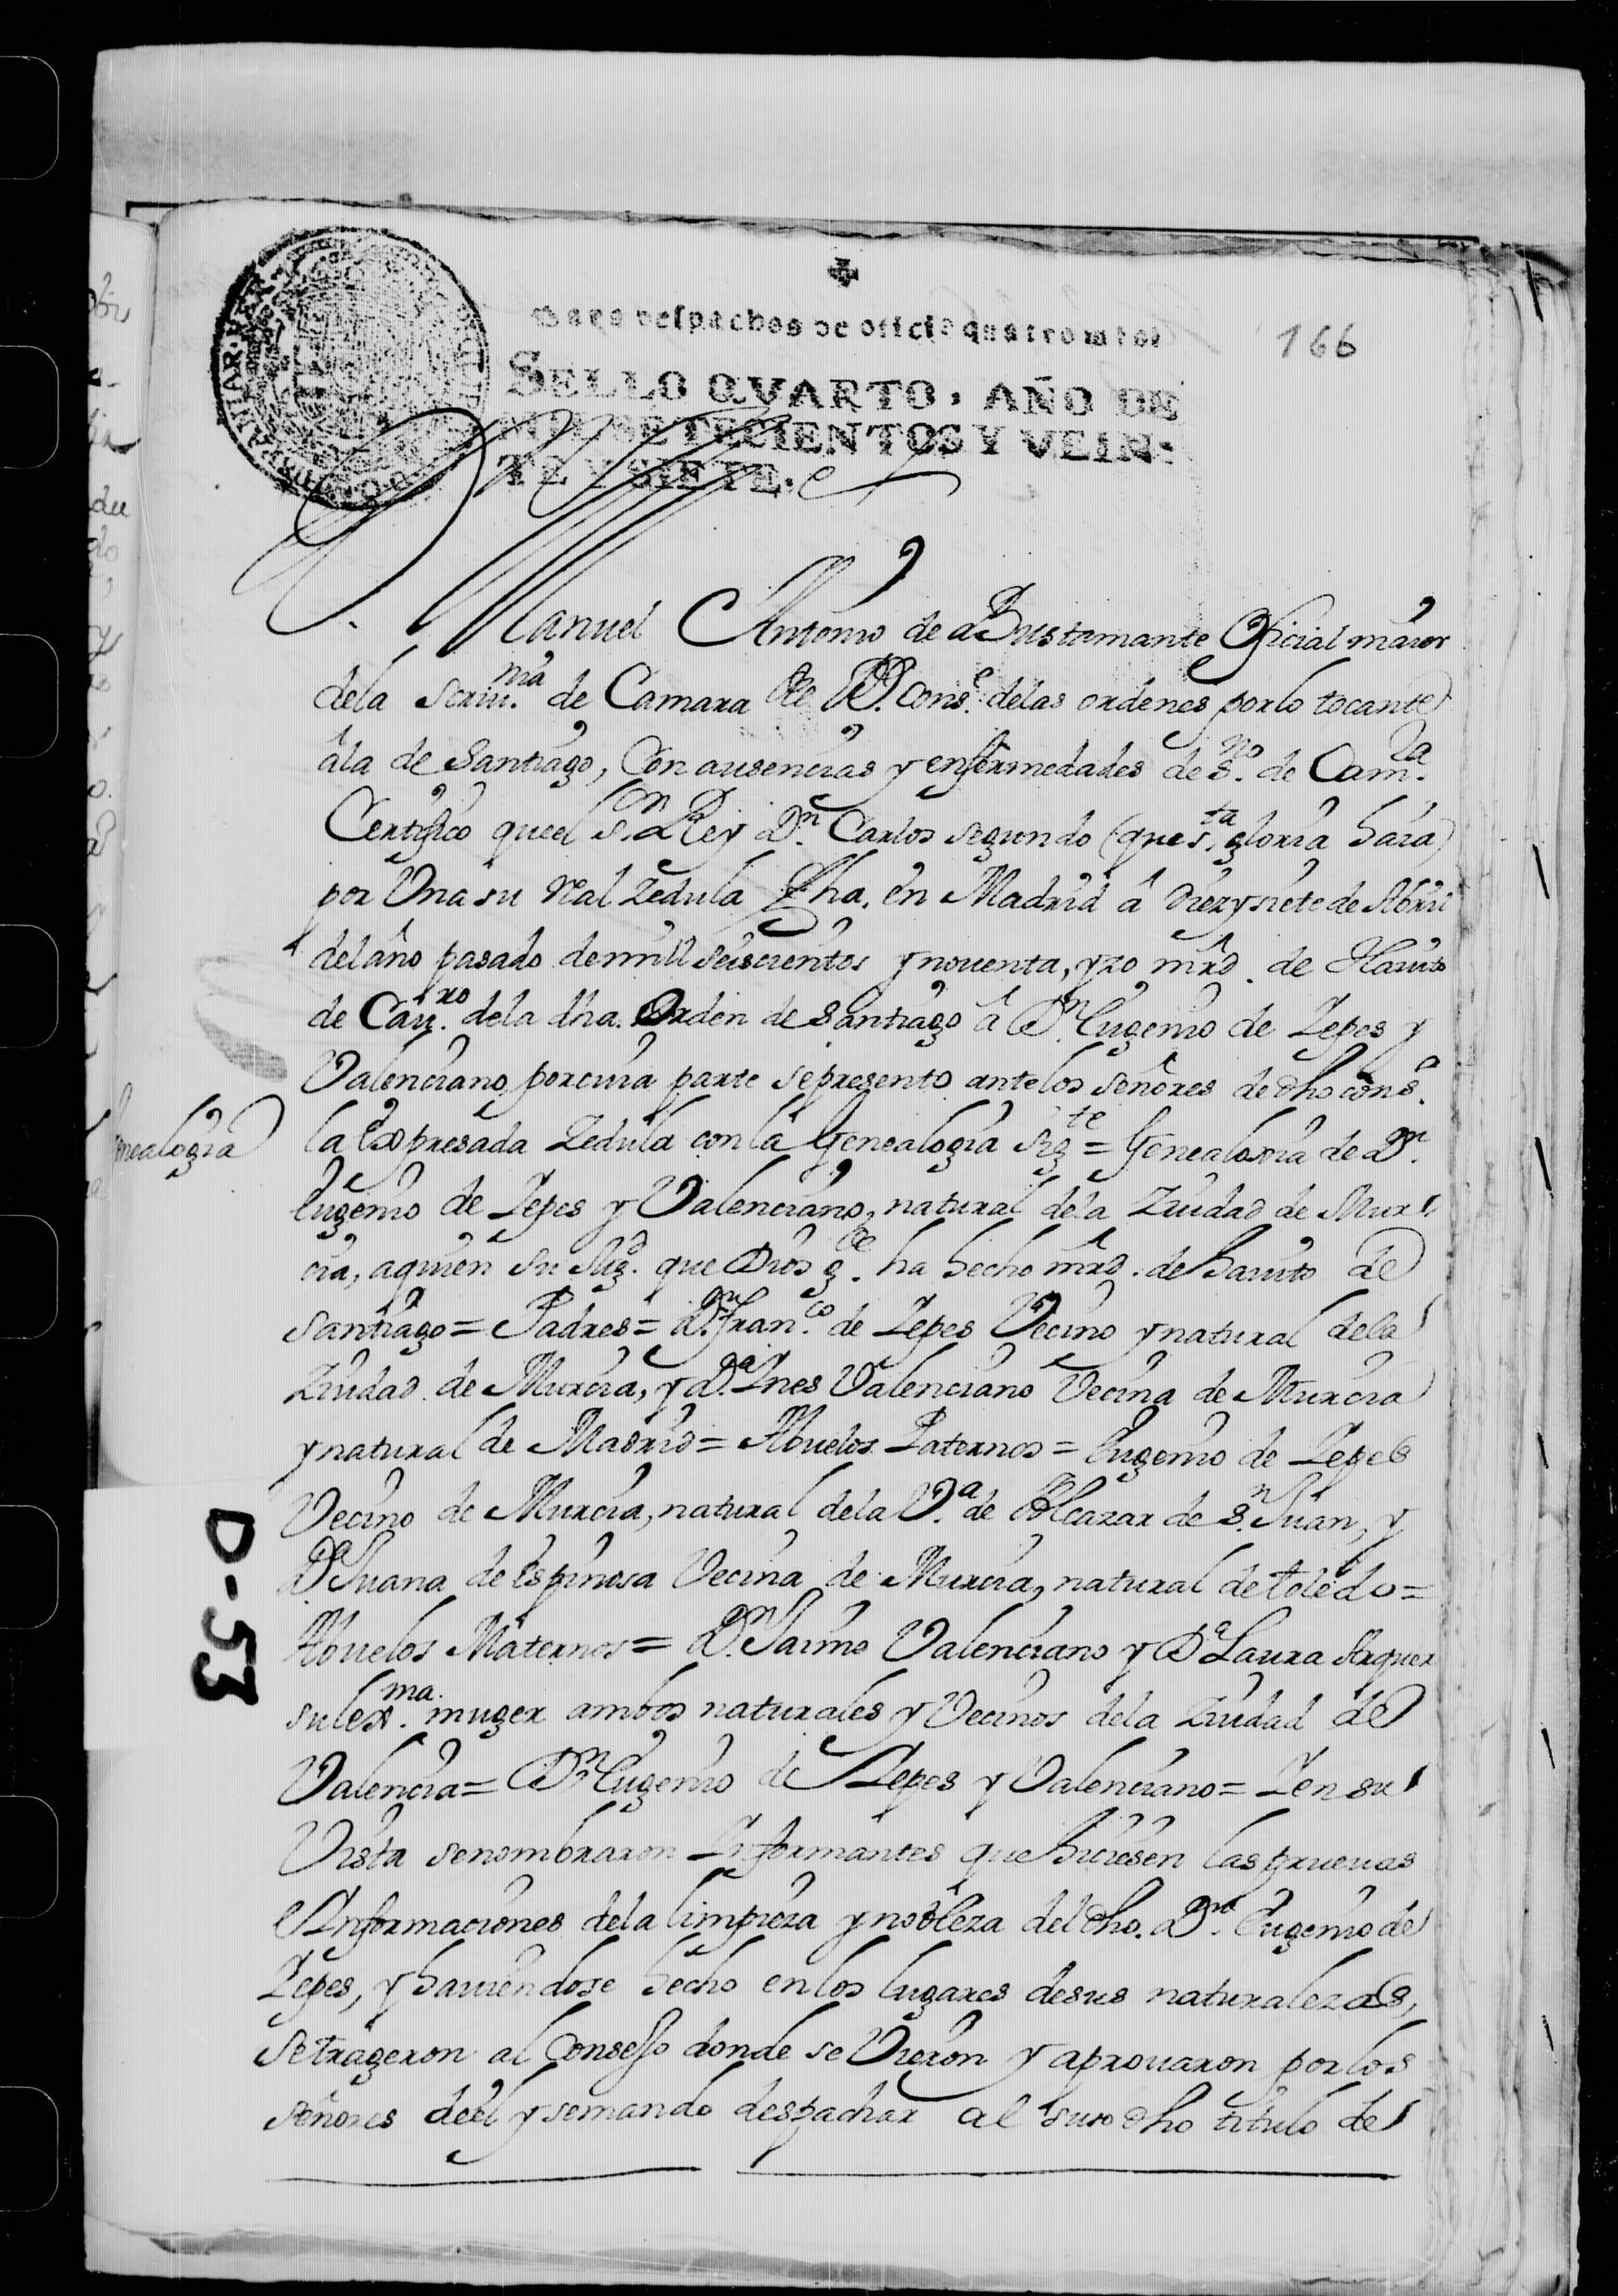 Certificación de la genealogía de Eugenio de Yepes y Valenciano, natural de Murcia, presentada para su ingreso en la Orden de Santiago, en 1690.